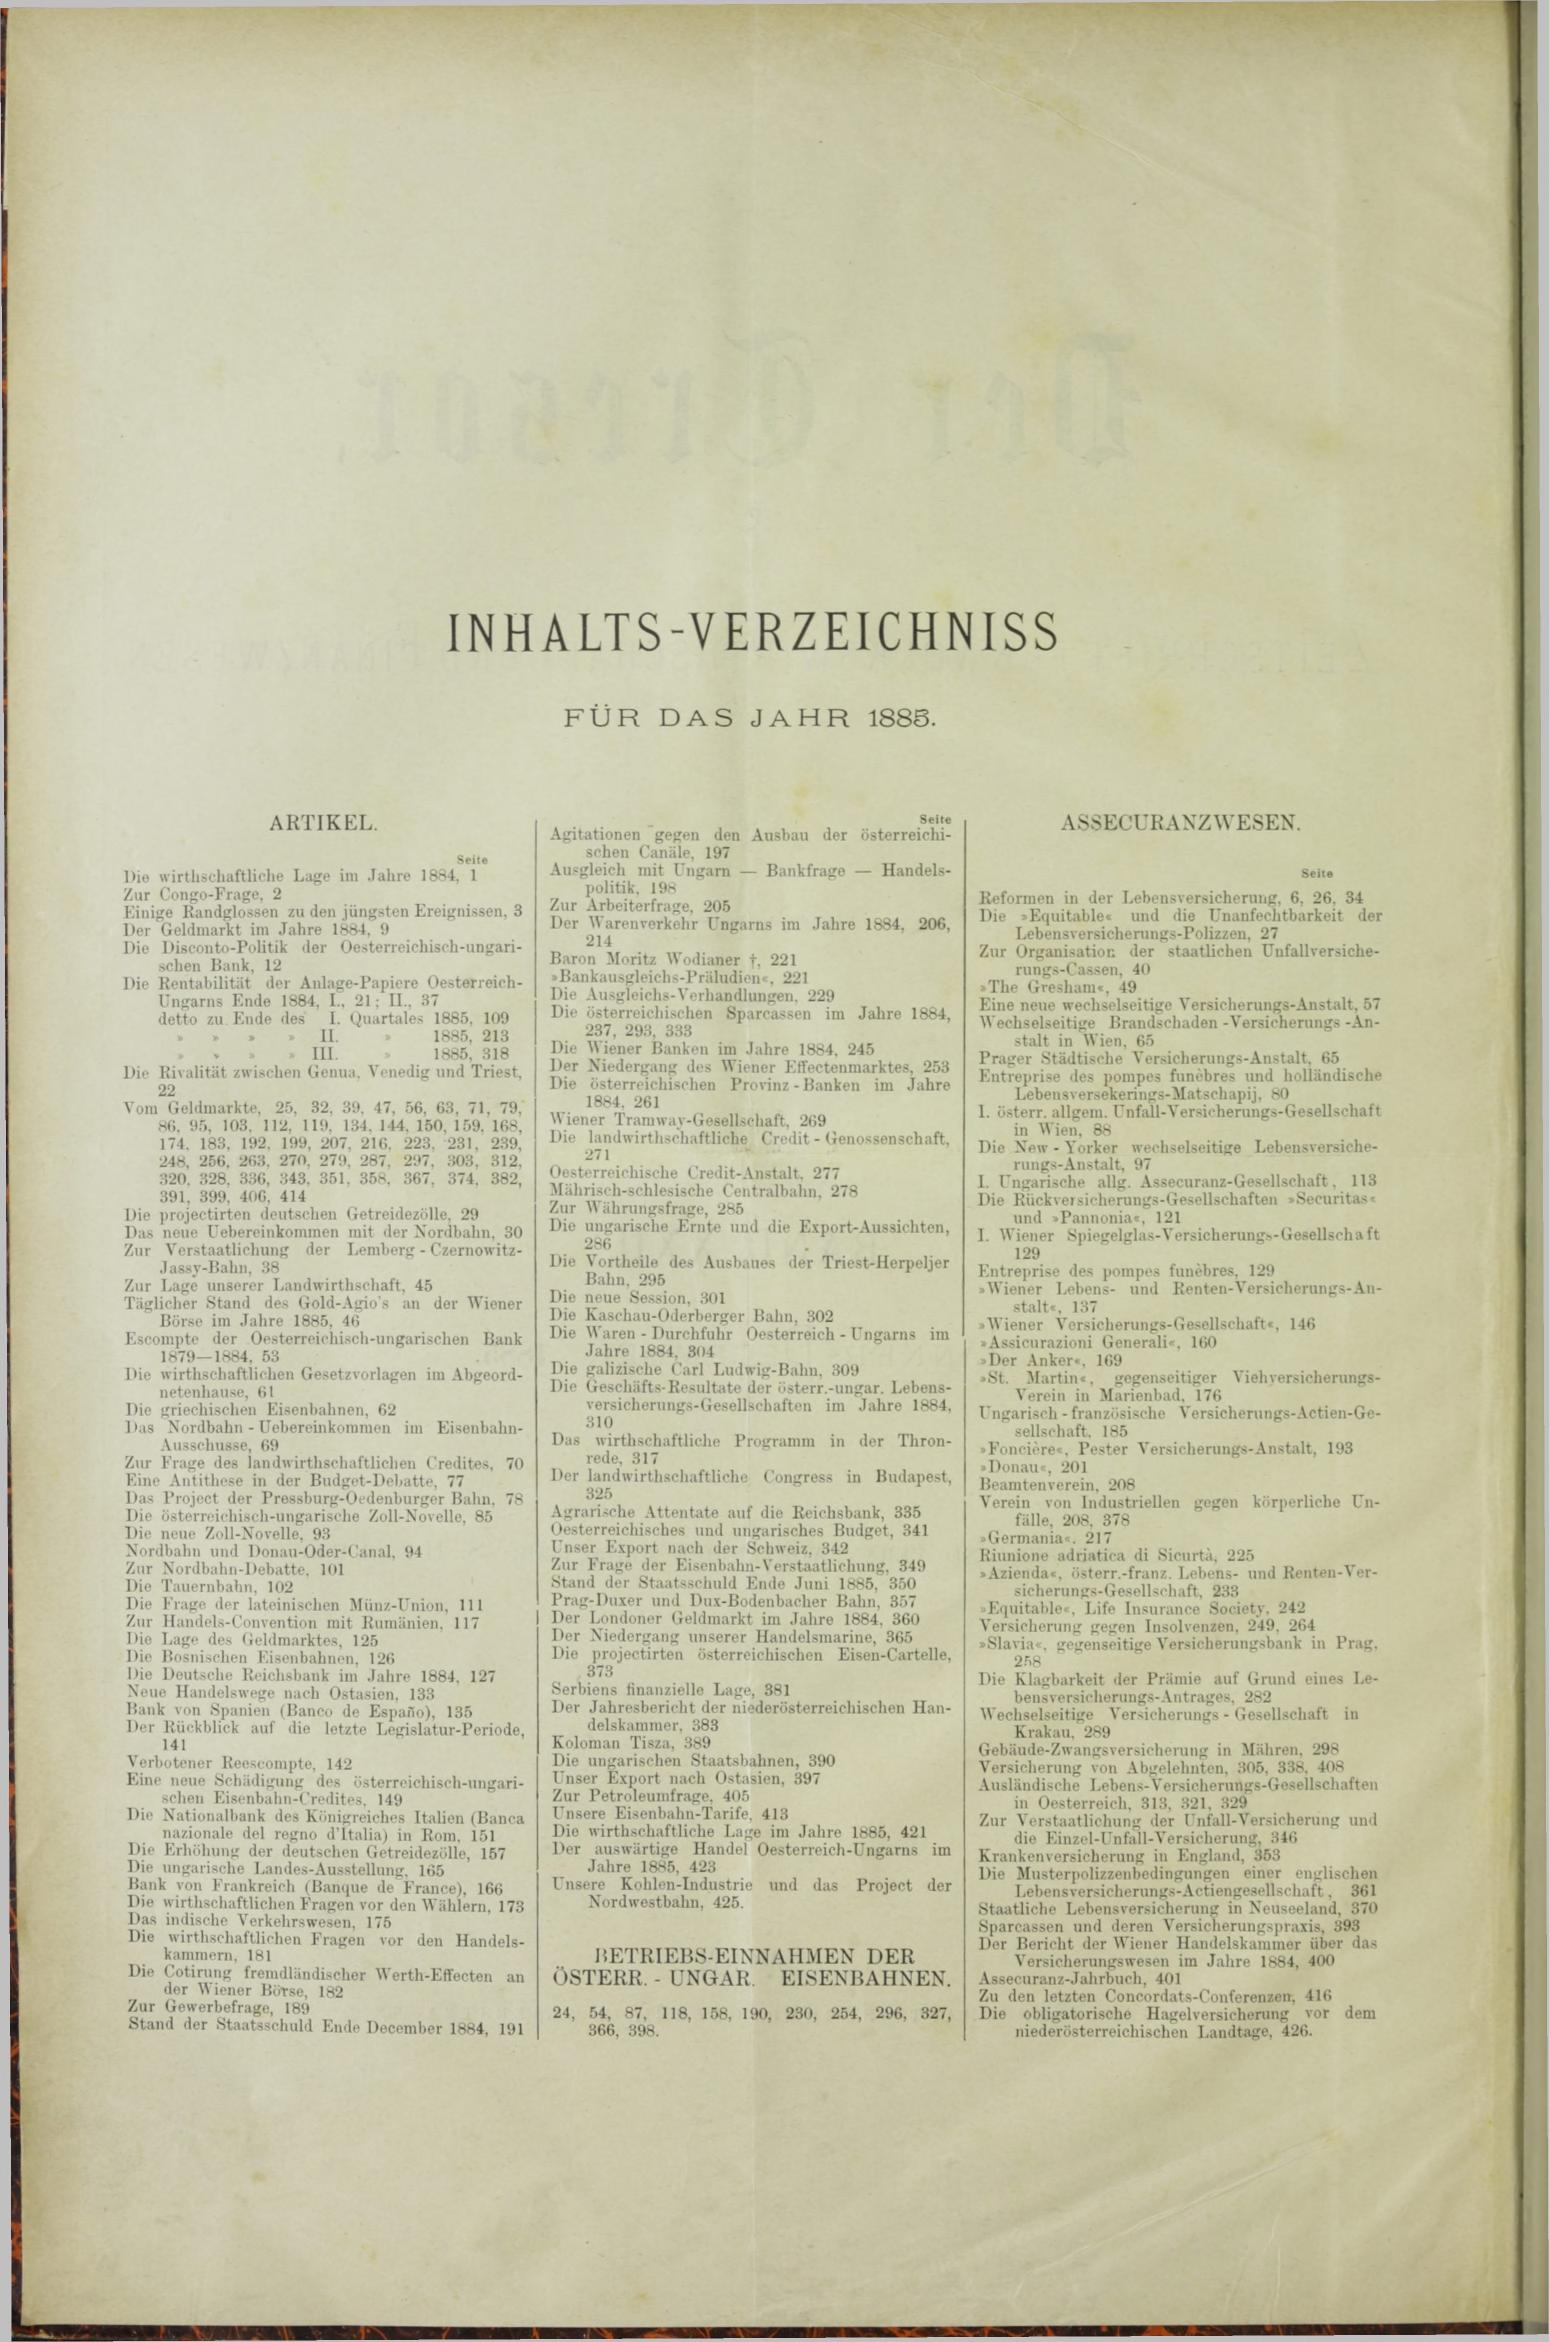 Der Tresor 29.01.1885 - Seite 10